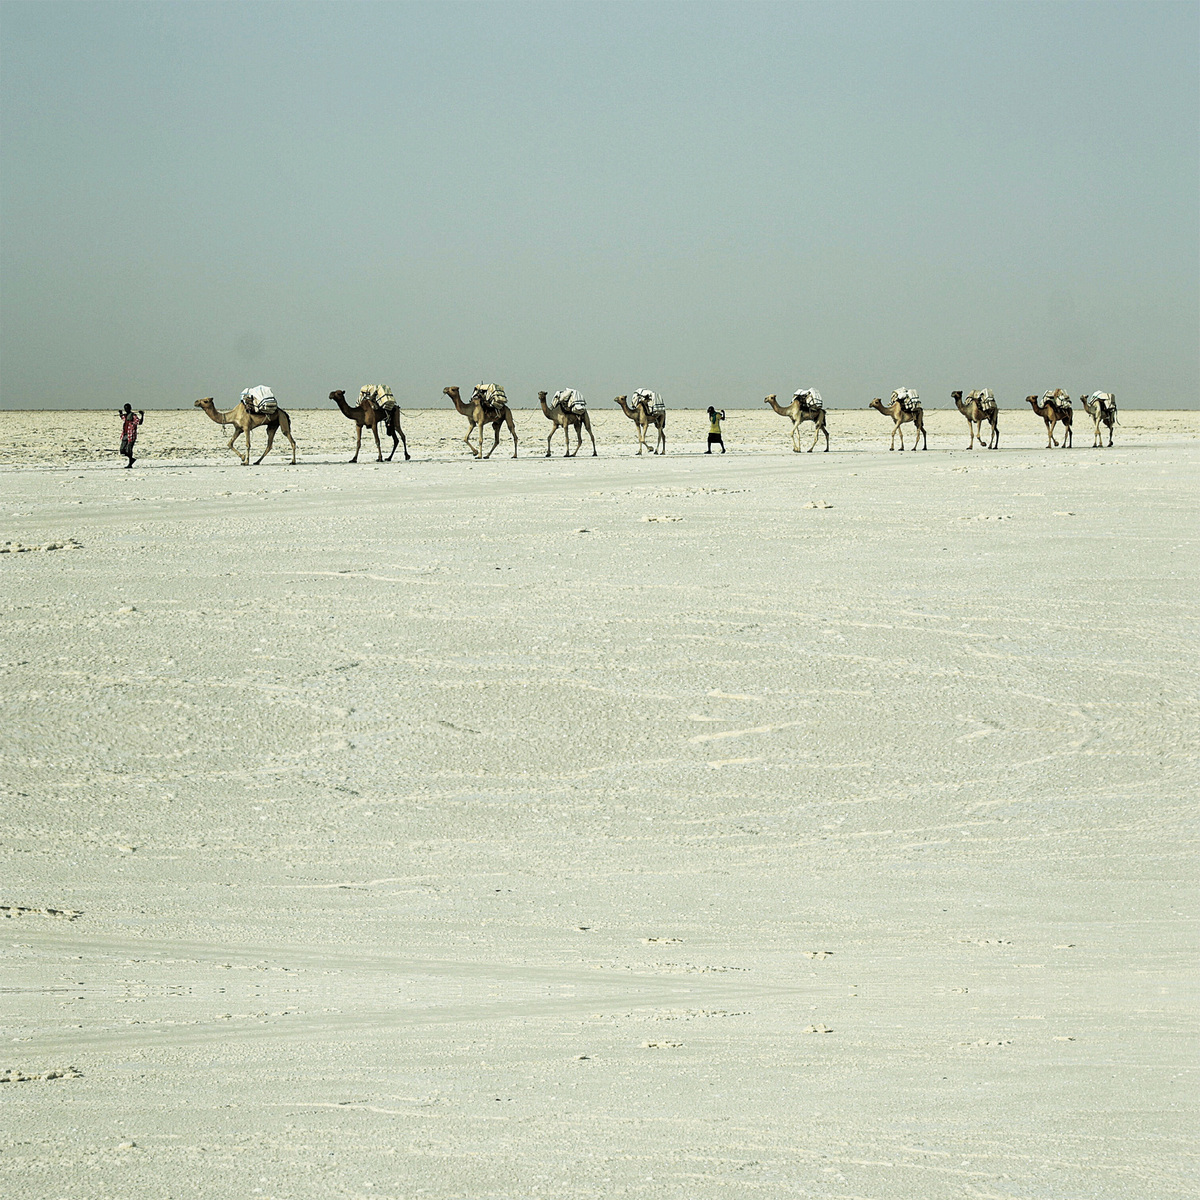 阿法爾人的駱駝商隊穿越蠻荒沙漠運鹽磚販賣，竭盡全力僅能勉強維持生計。（網絡圖片）